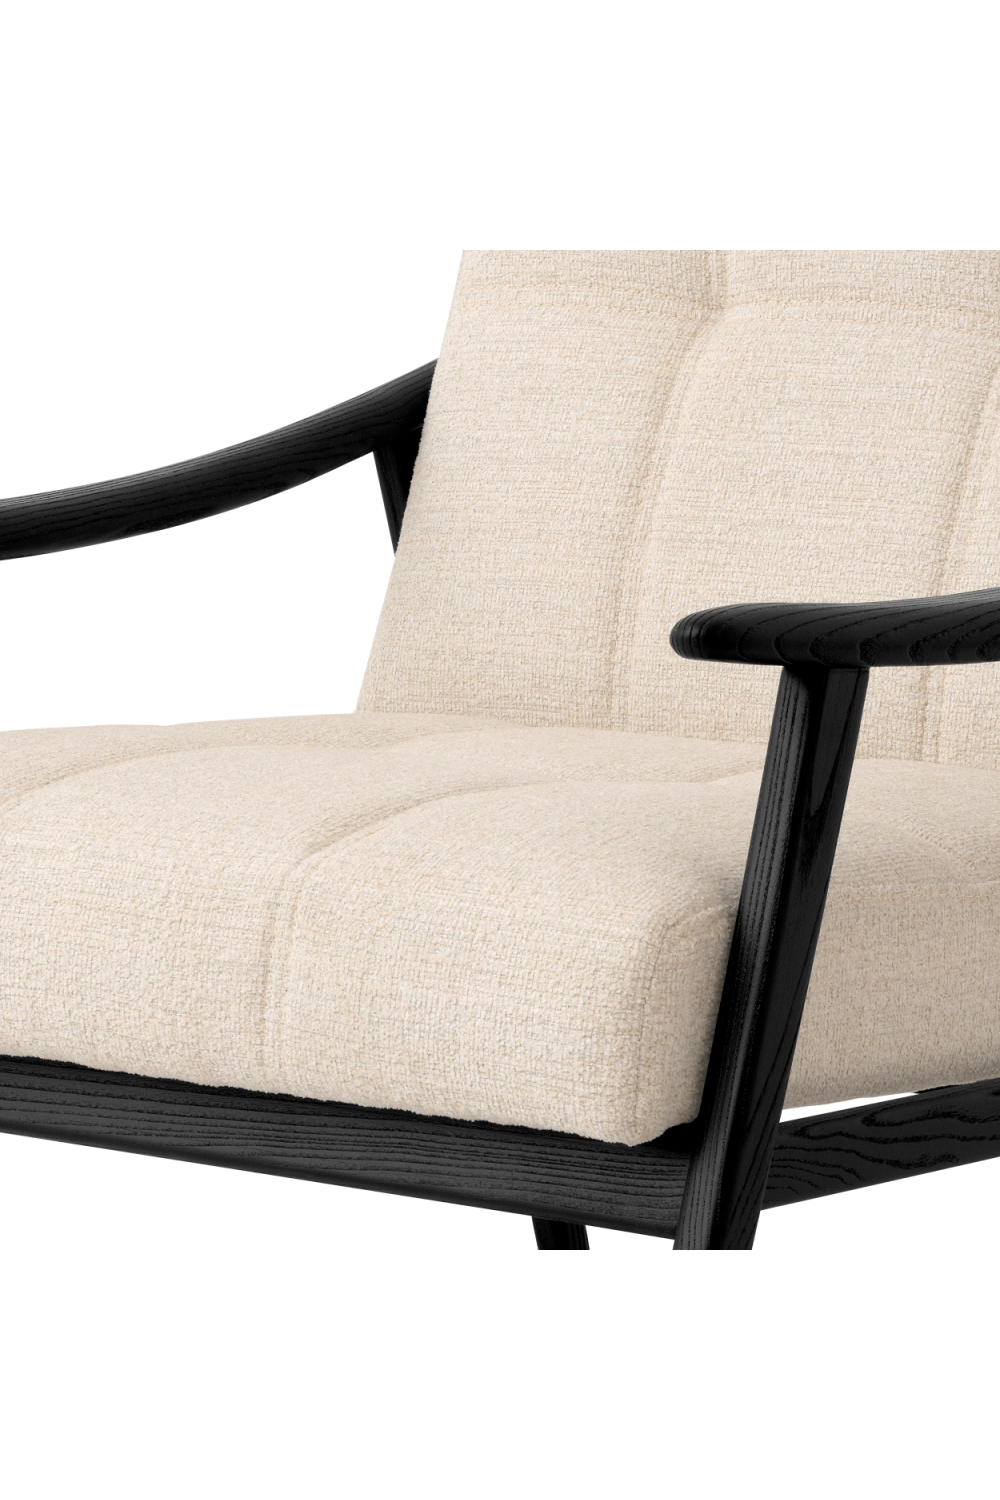 Black Frame Cushioned Lounge Chair | Eichholtz Mortensen | Oroa.com